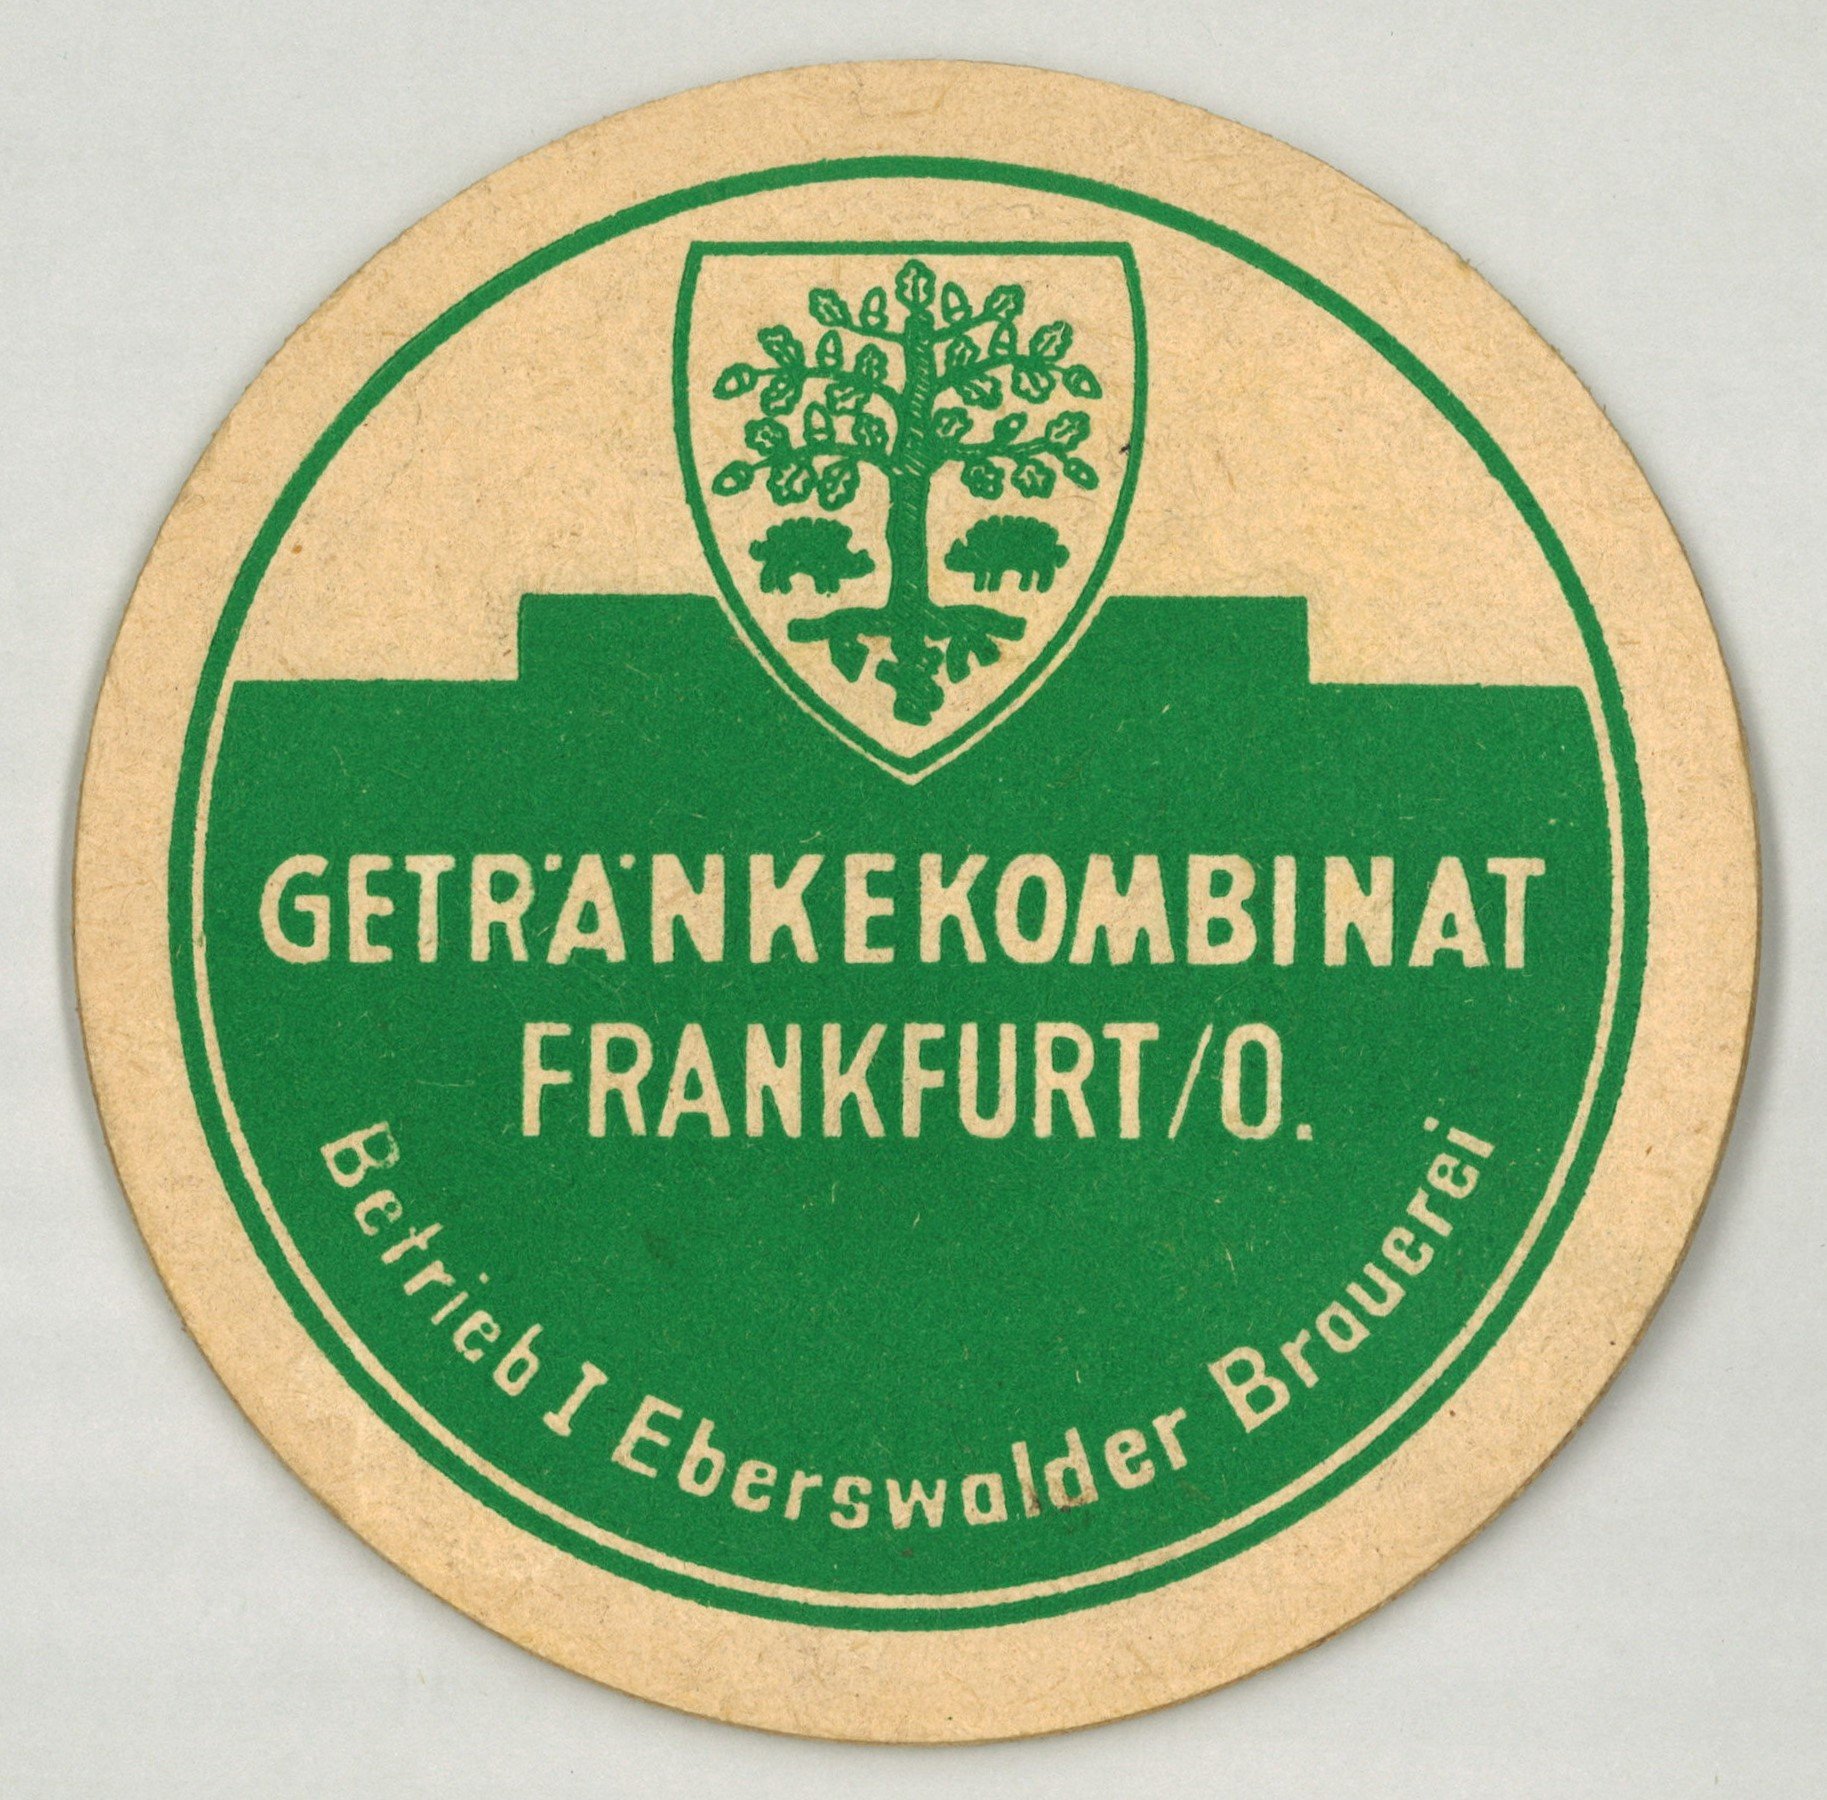 Eberswalde: Getränkekombinat Frankfurt/O., Betrieb I Eberswalder Brauerei (Landesgeschichtliche Vereinigung für die Mark Brandenburg e.V., Archiv CC BY)